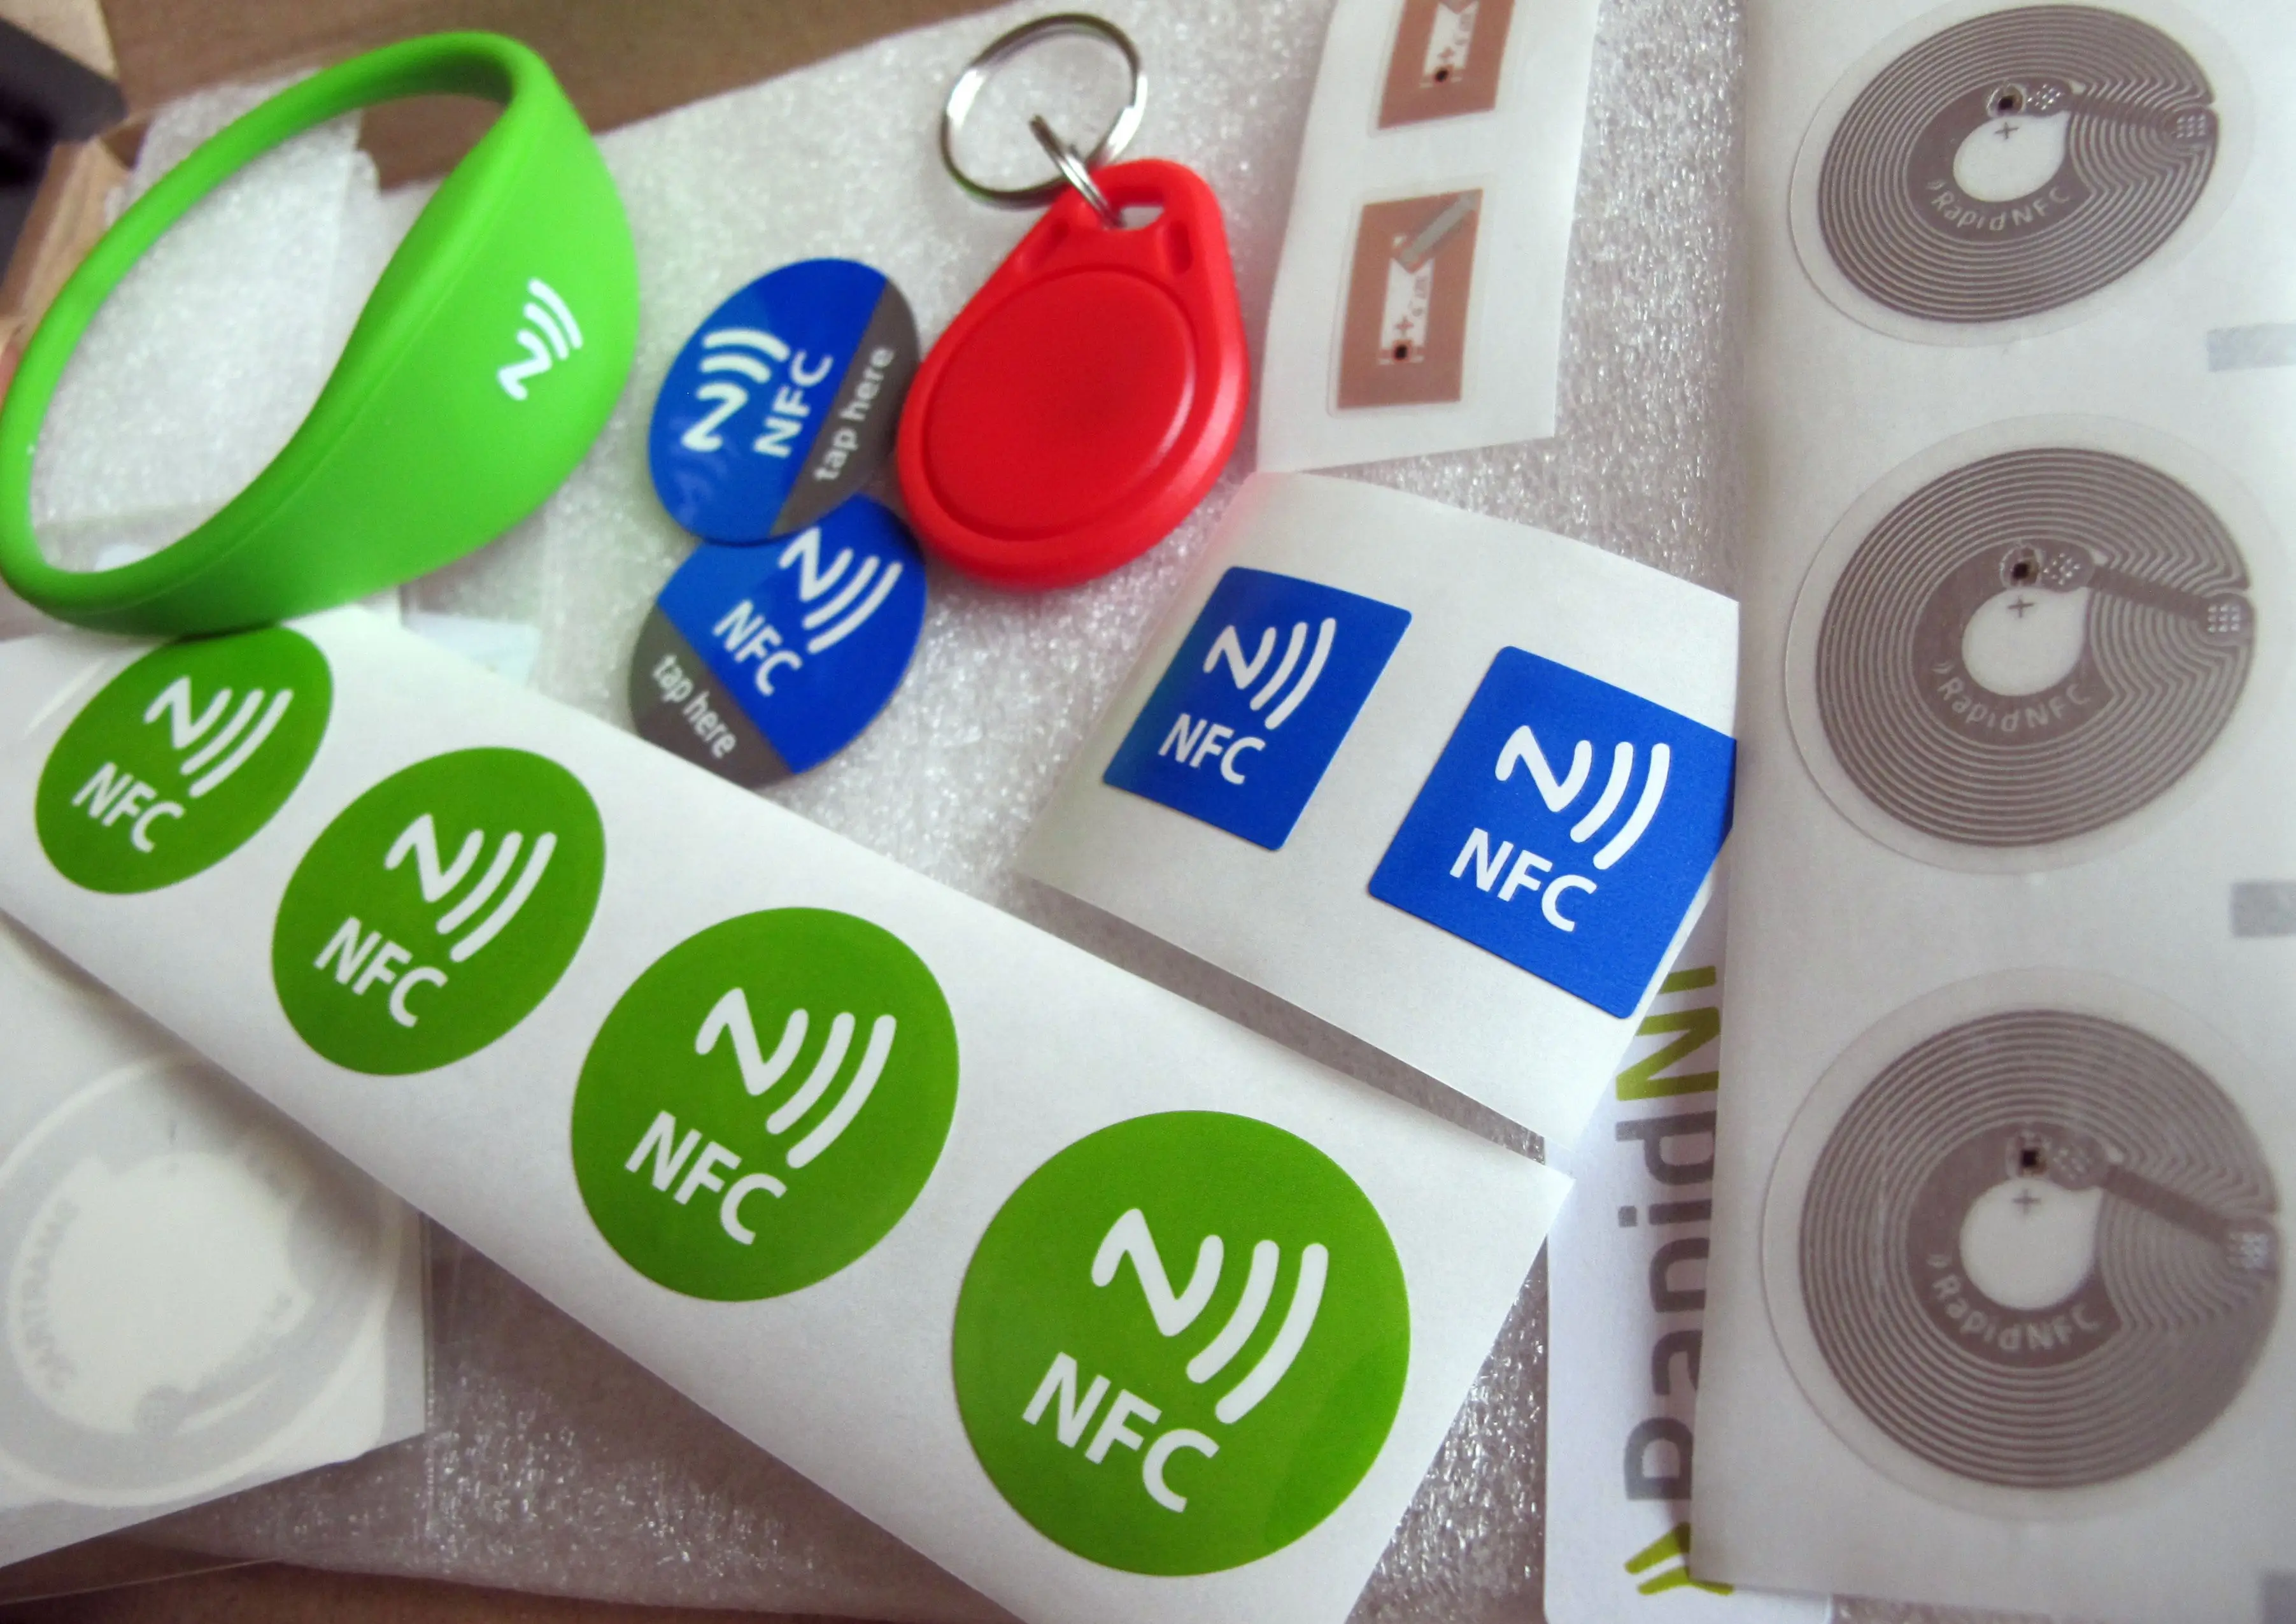 Дизайн платежных стикеров. NFC наклейка. NFC чип наклейка. Стикер для бесконтактной оплаты. NFC метка для бесконтактной оплаты.